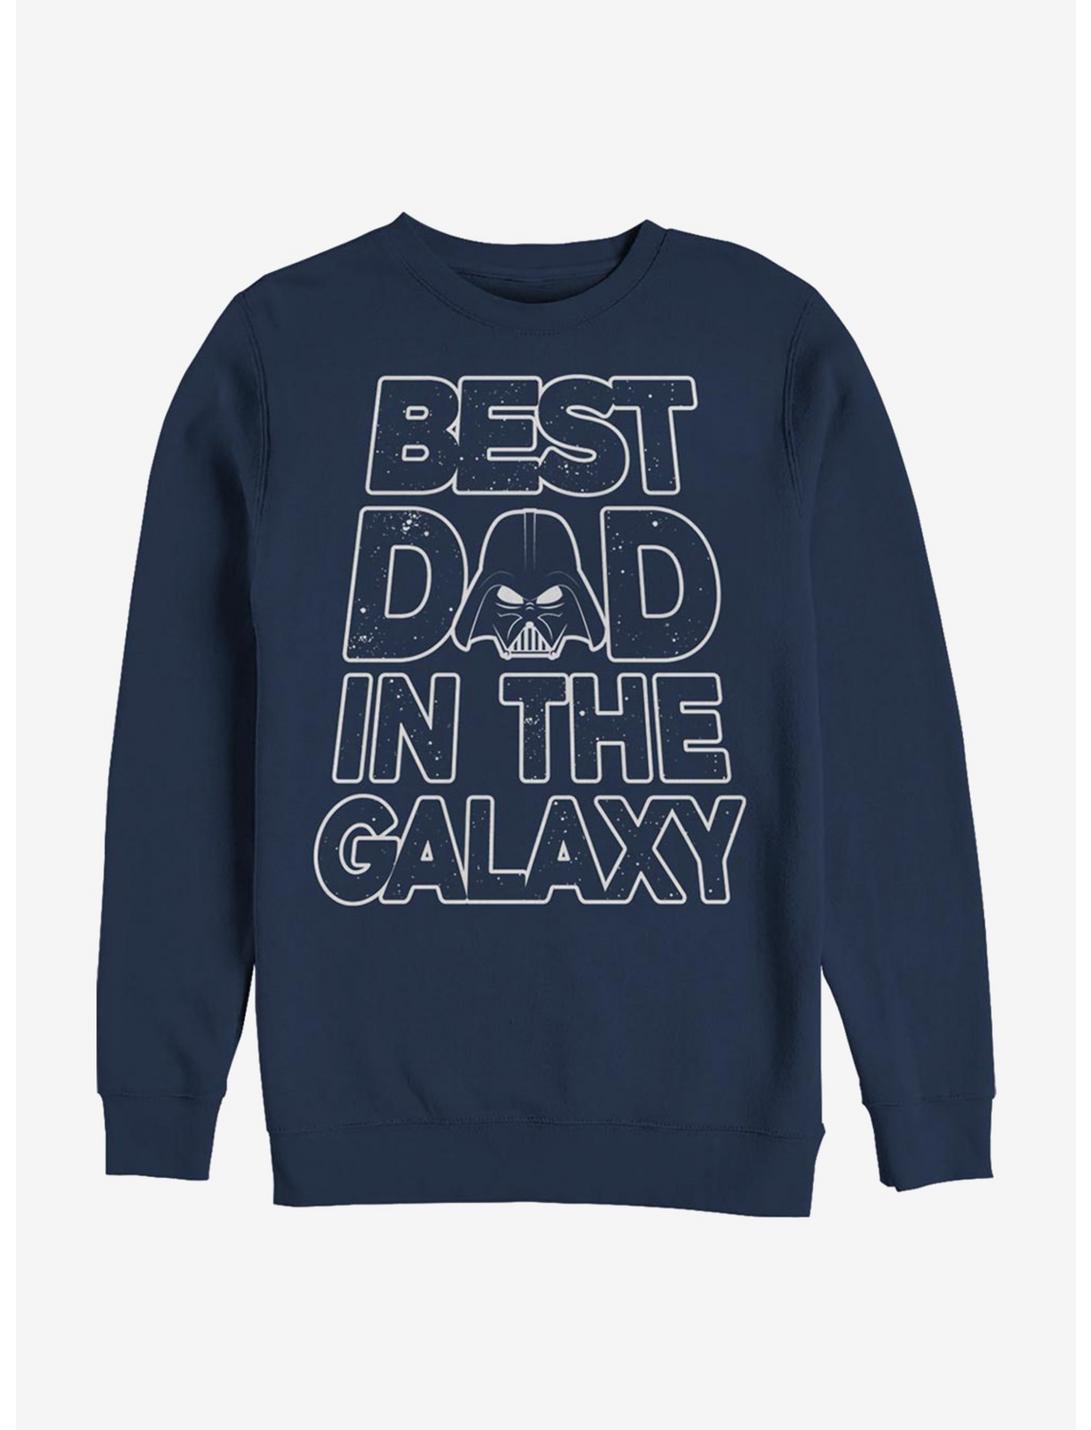 Star Wars Galaxy Dad Sweatshirt, NAVY, hi-res